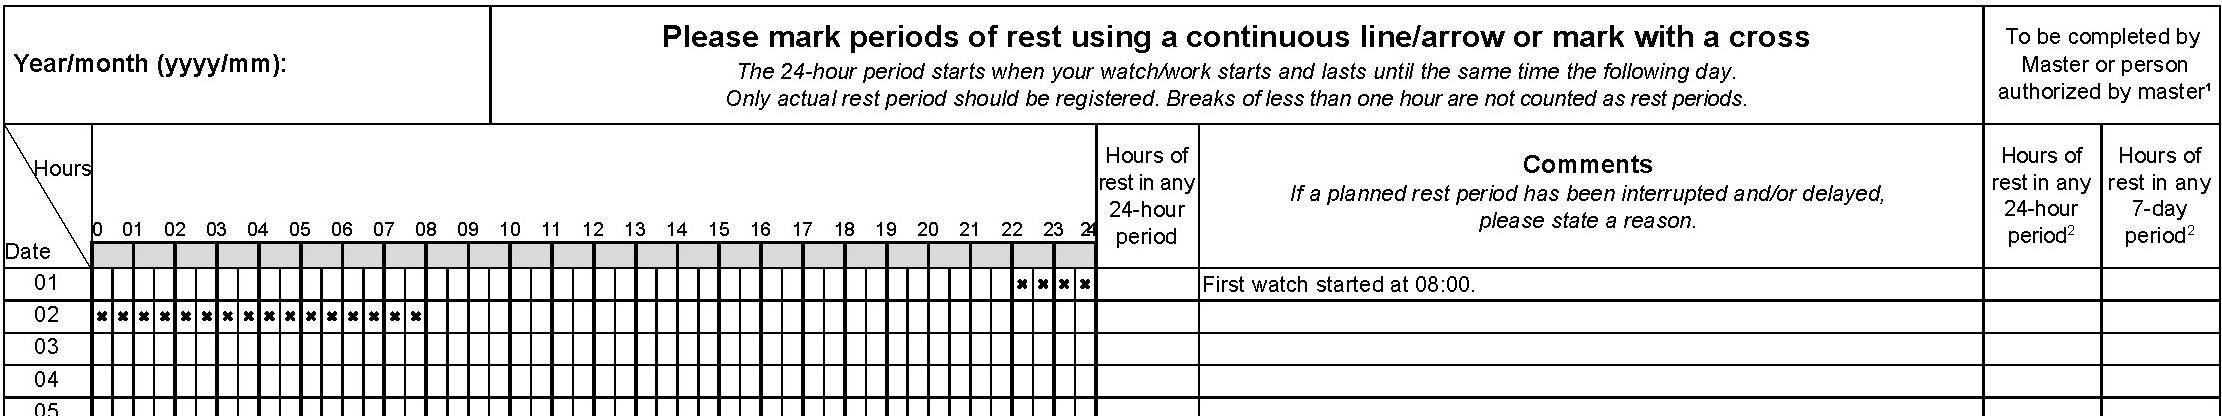 Illustration - register hours of rest